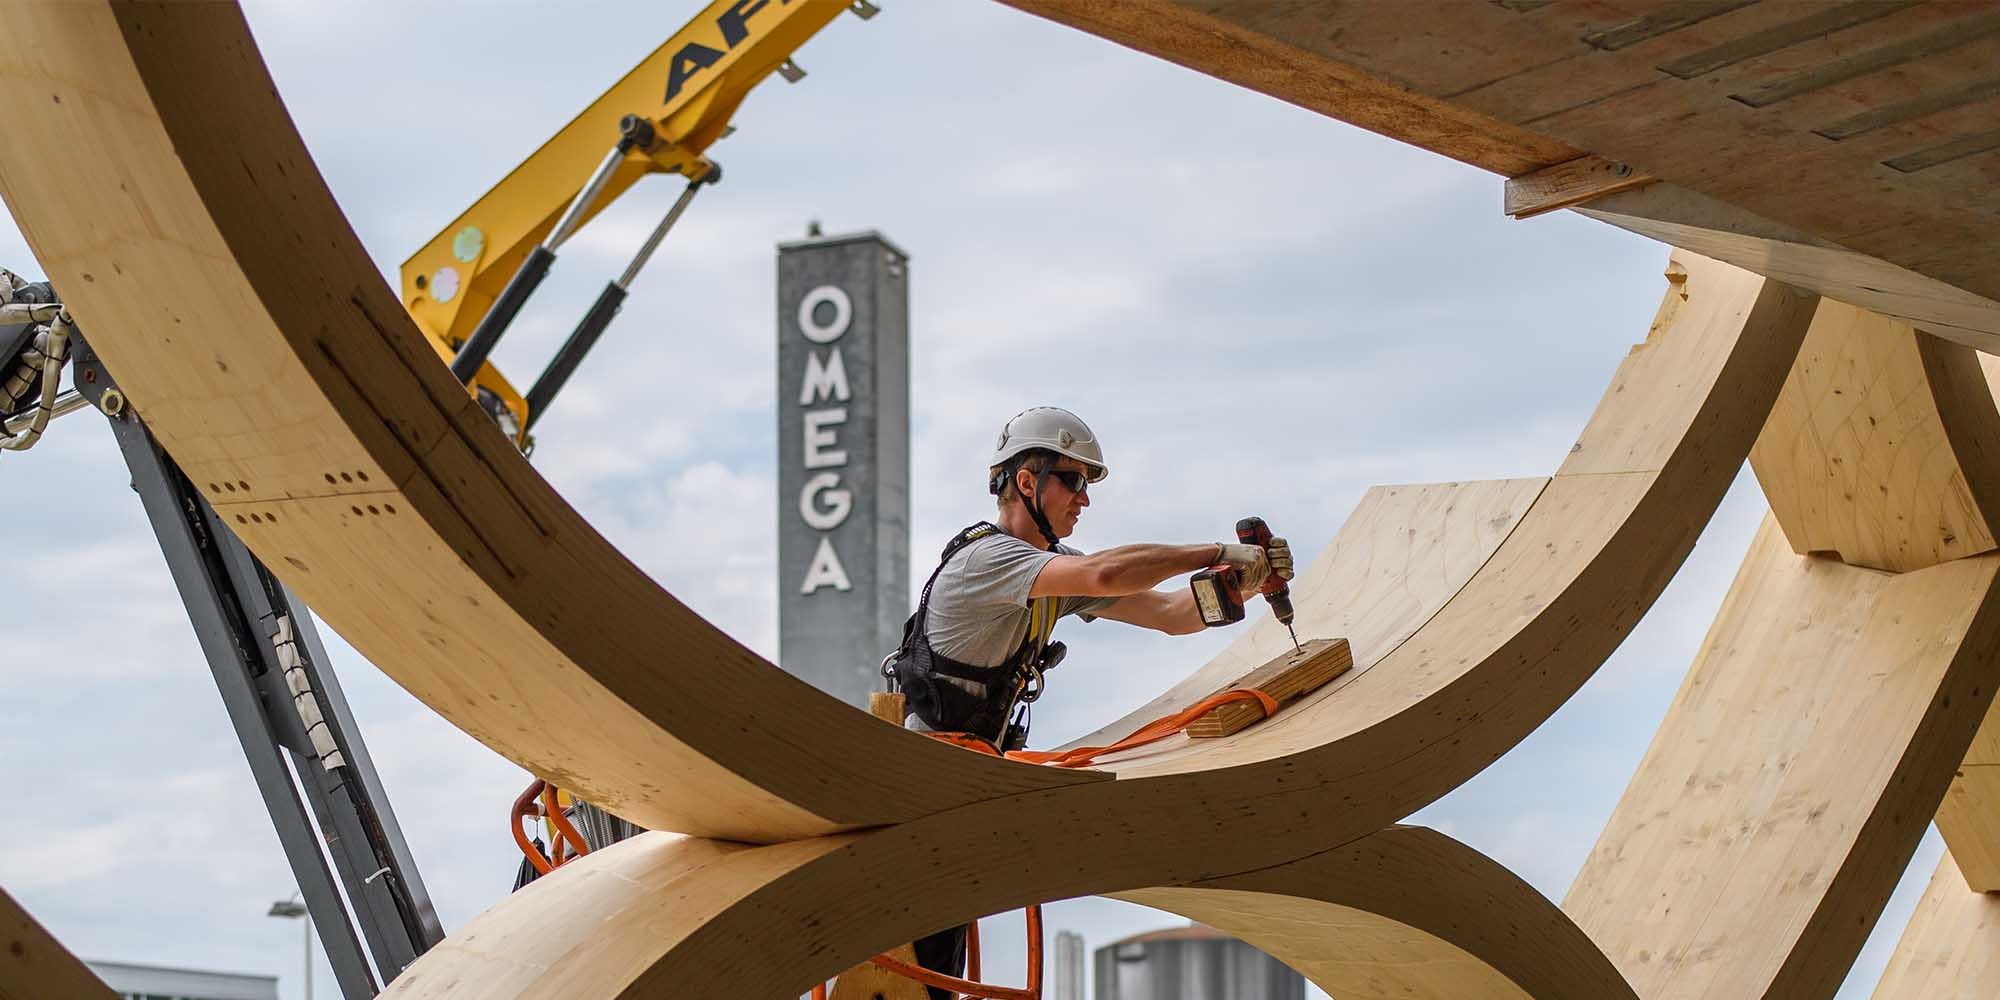 Der Montagemitarbeitende bohrt ein Loch in die Holzkonstruktion des Swatch-Gebäudes